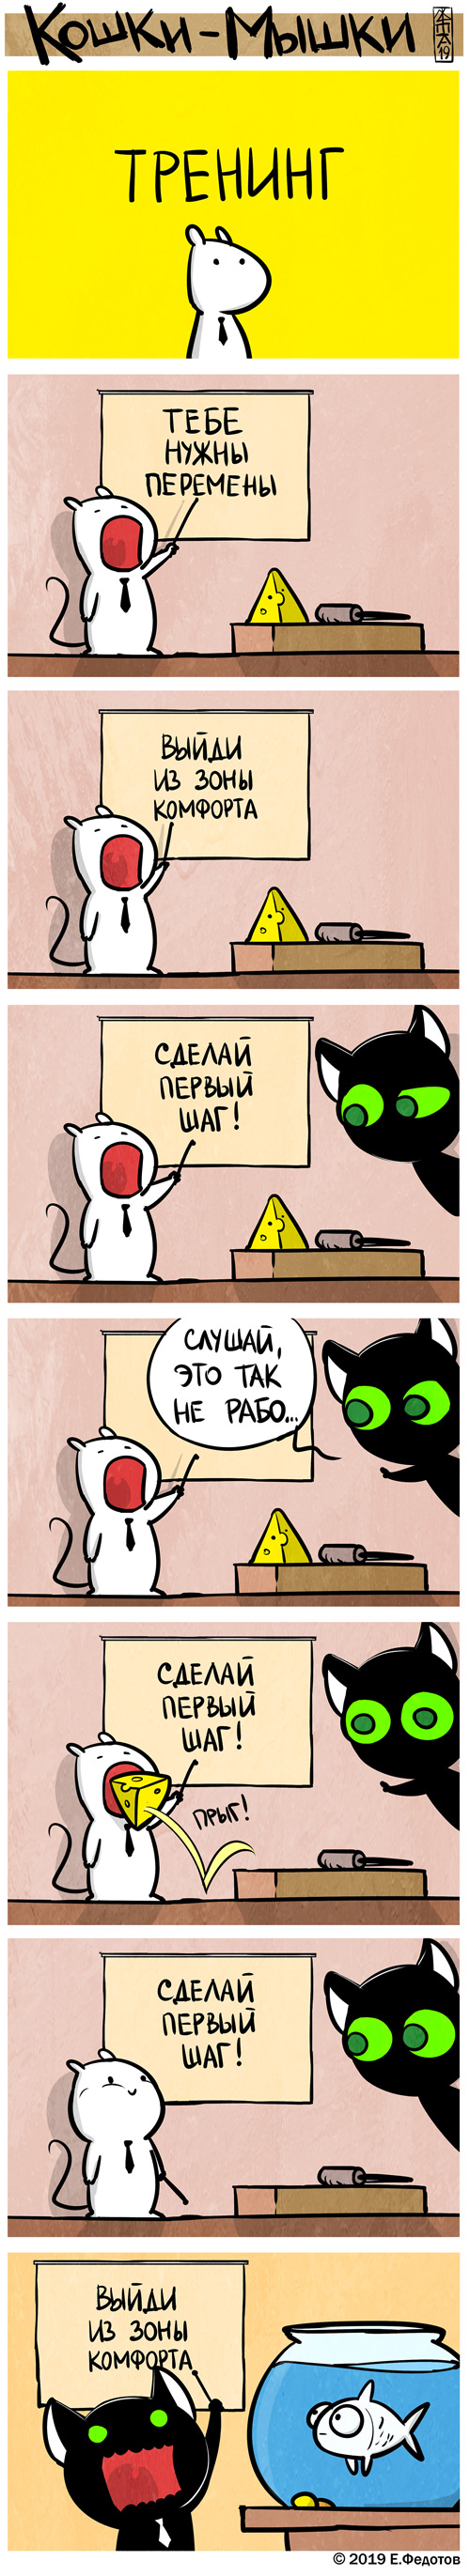 Комикс Кошки-мышки: выпуск №448